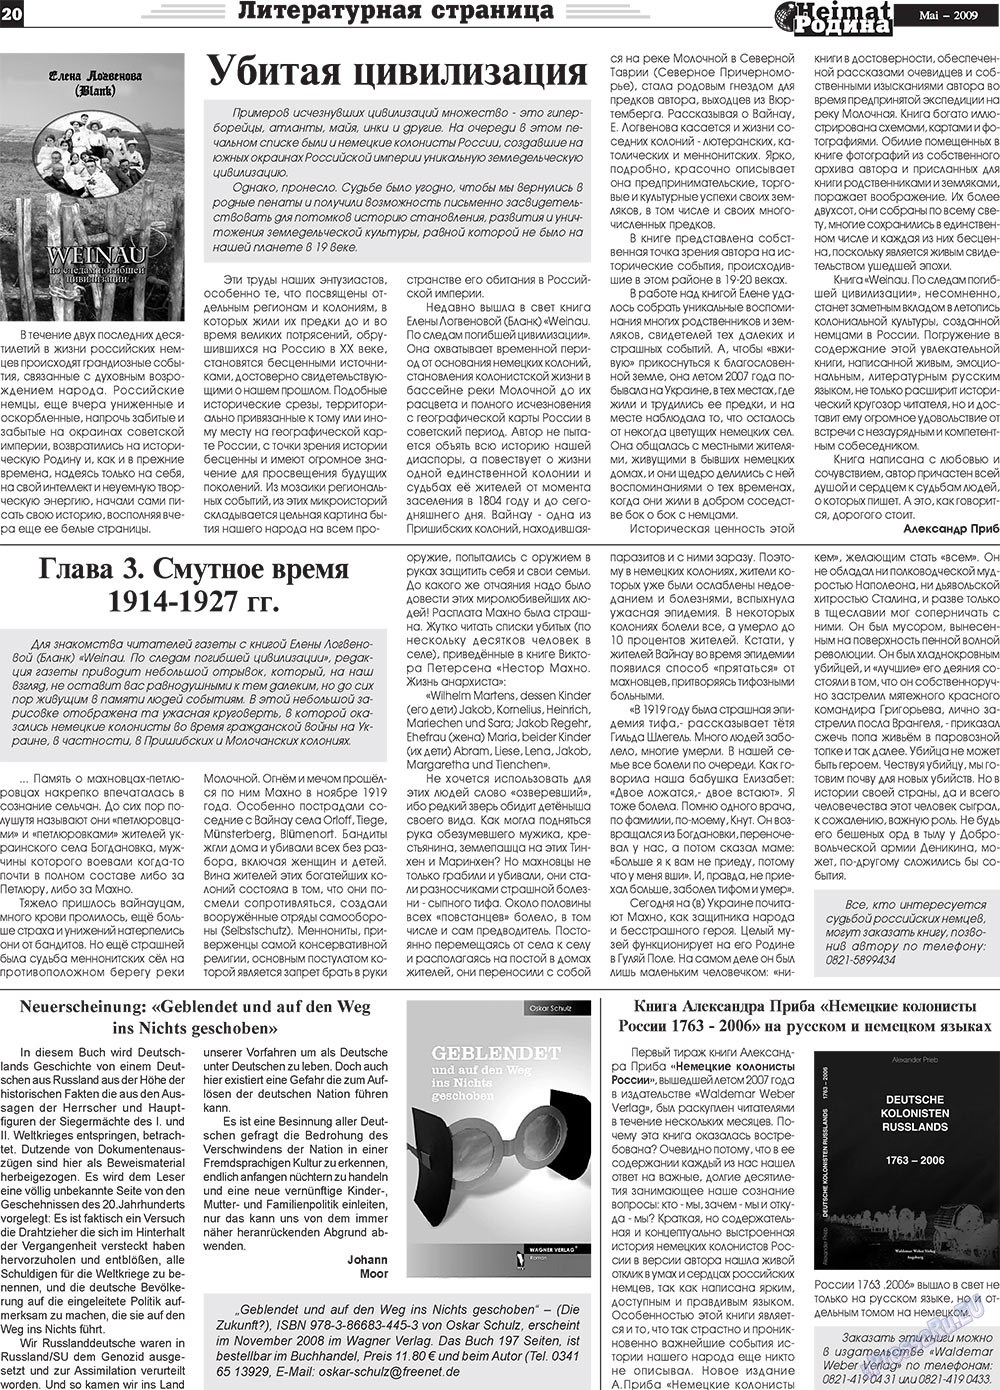 Heimat-Родина (газета). 2009 год, номер 5, стр. 20